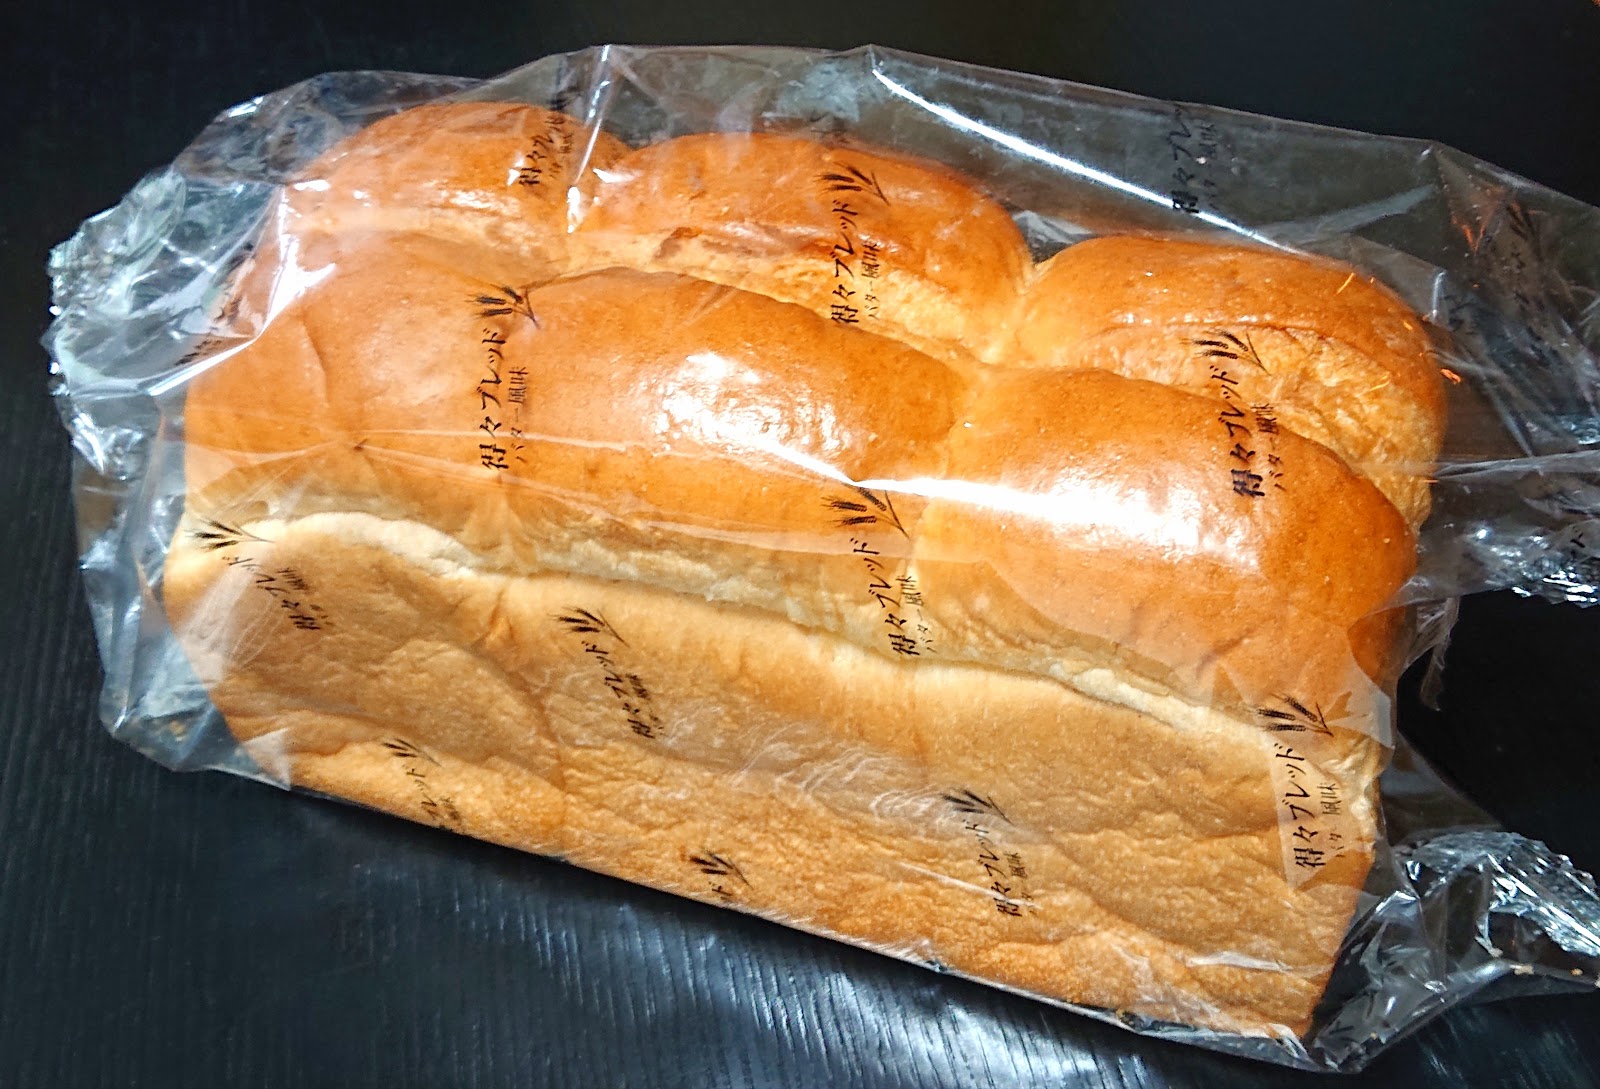 山一パン総本店 得々ブレッド バター風味 ボリューム満点の高コスパ食パン